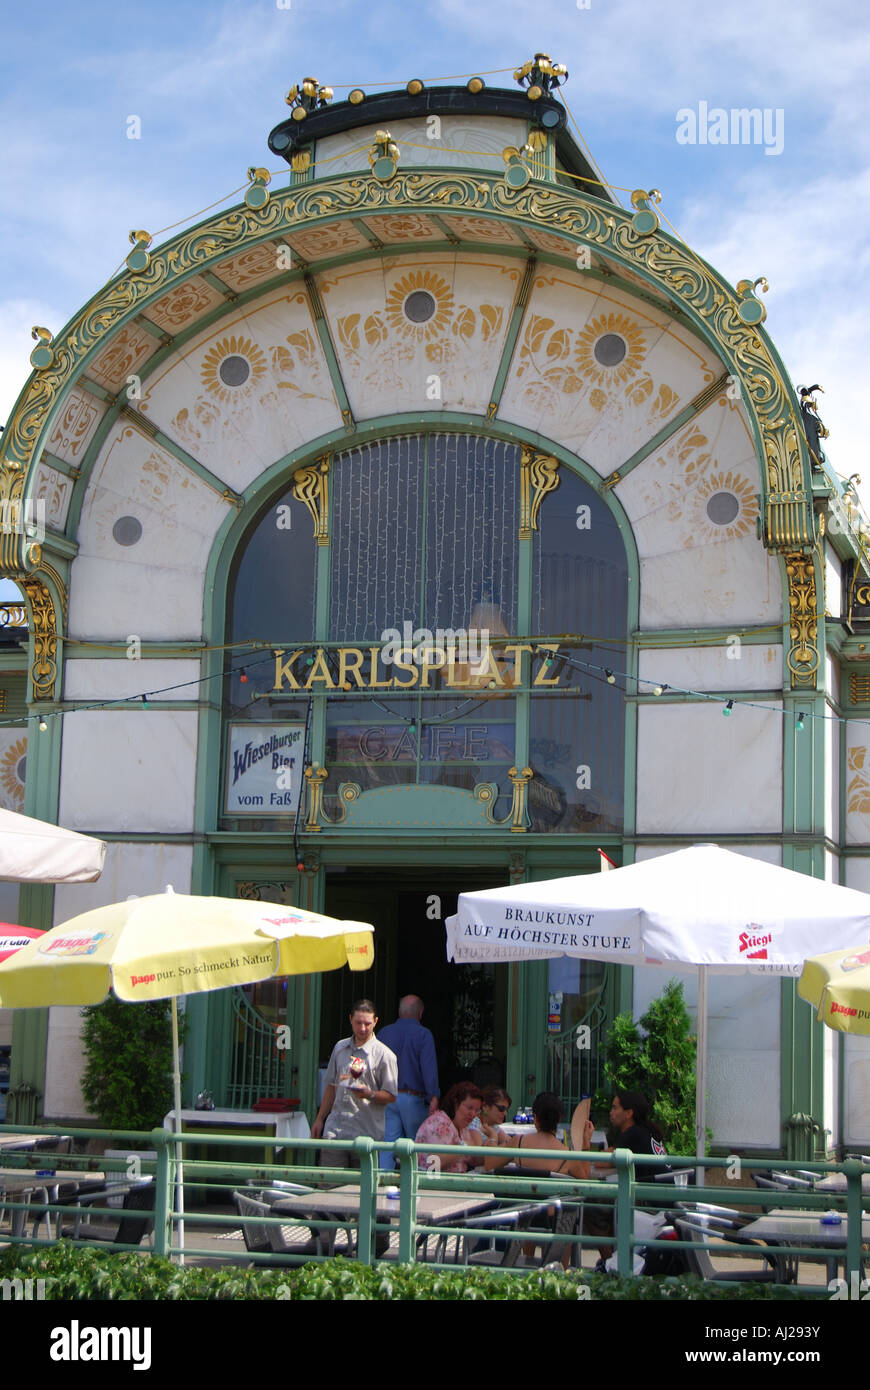 Wagner Pavilions Cafe, Karlsplatz, Vienna, Wein, Republic of Austria Stock Photo